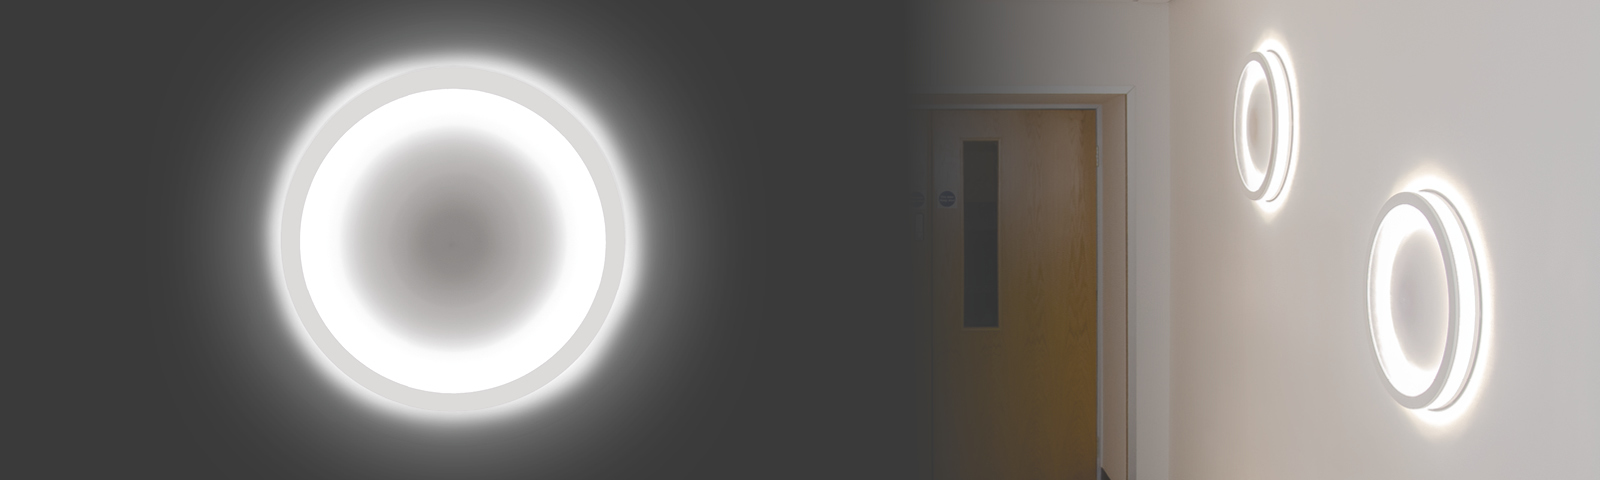 Ovix – Indirekte Beleuchtung bei hervorragender Lichtverteilung